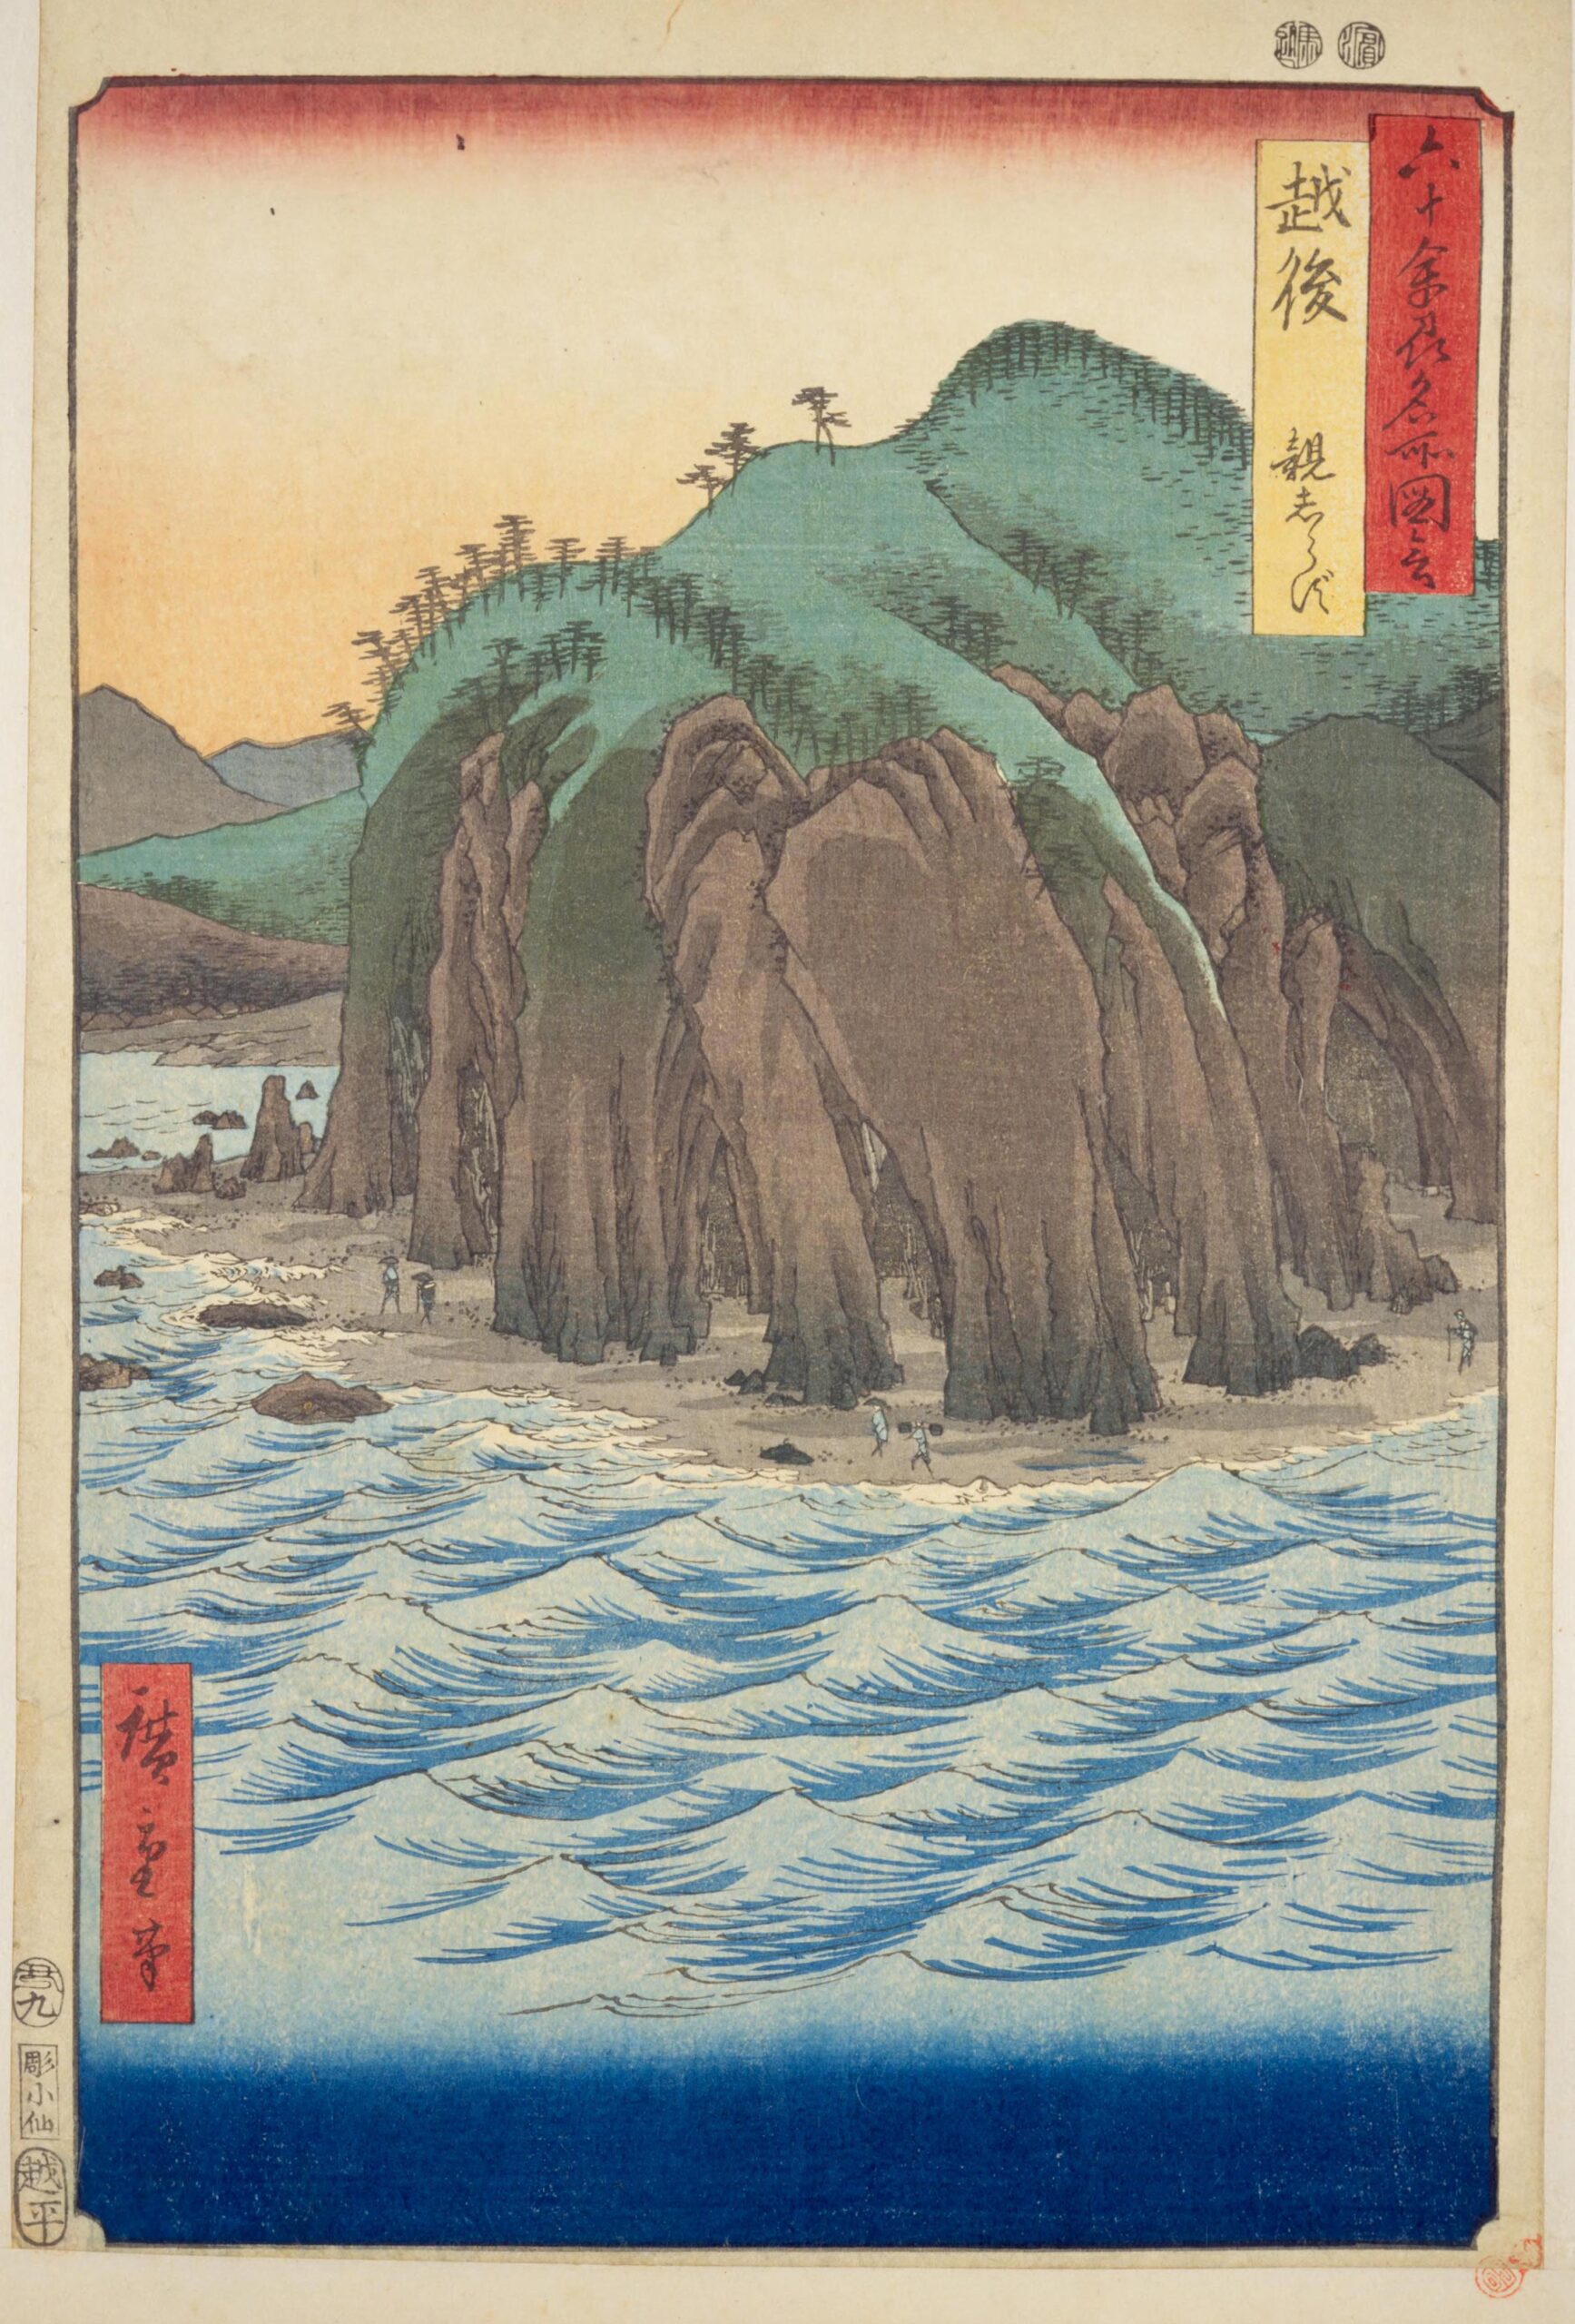 Hiroshiges - 35 Echigo Province: Oyashirazu (Echigo, Oyashirazu) - Pictures of Famous Places in the Sixty-odd Provinces